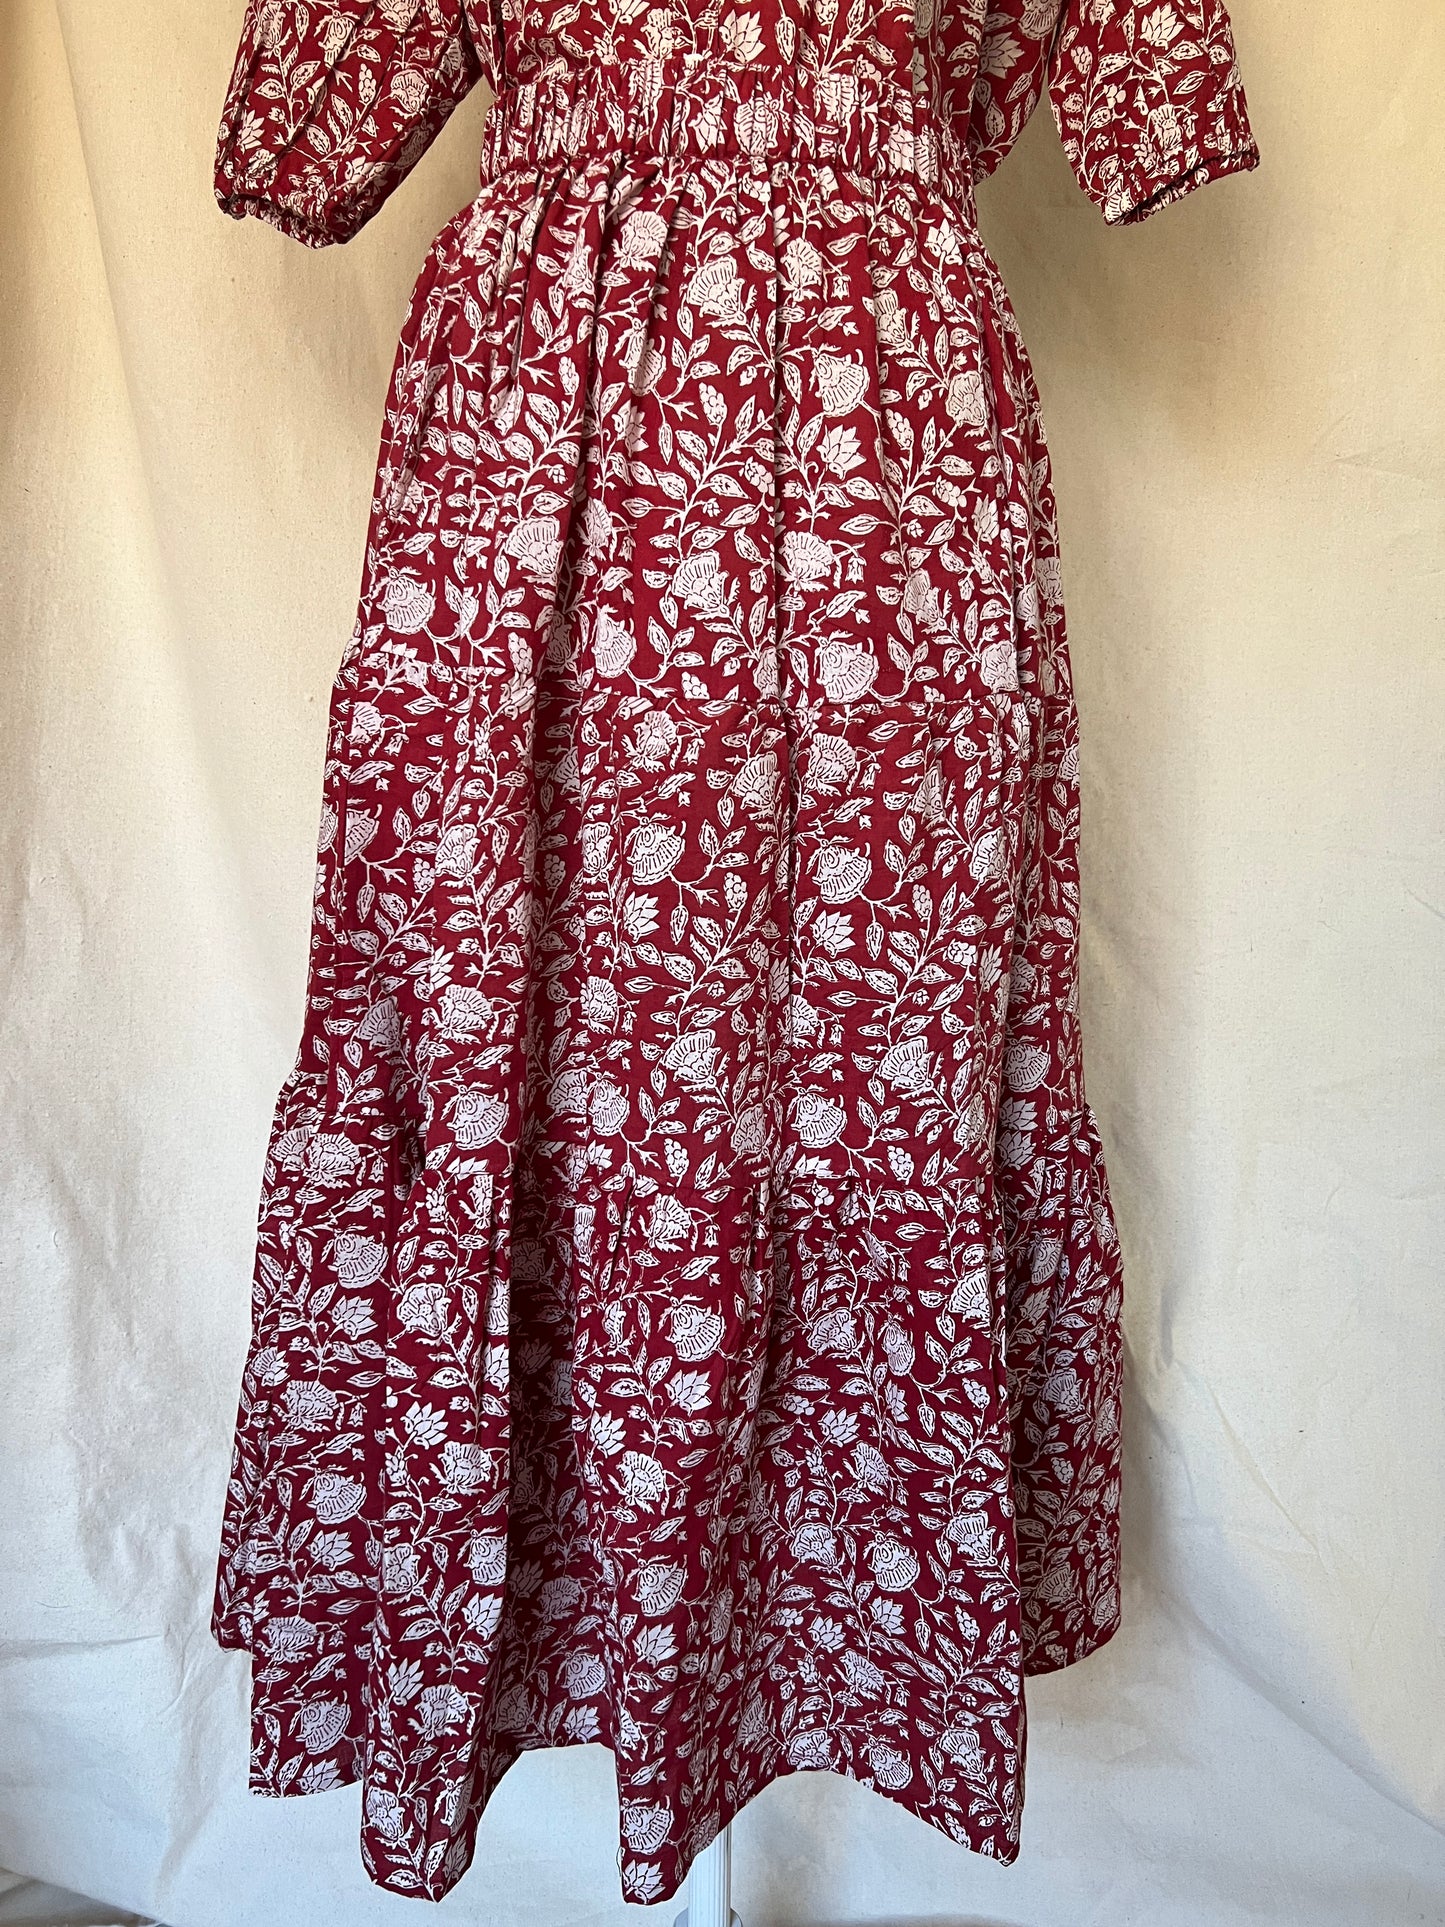 Bennie Tiered Skirt - Red Floral